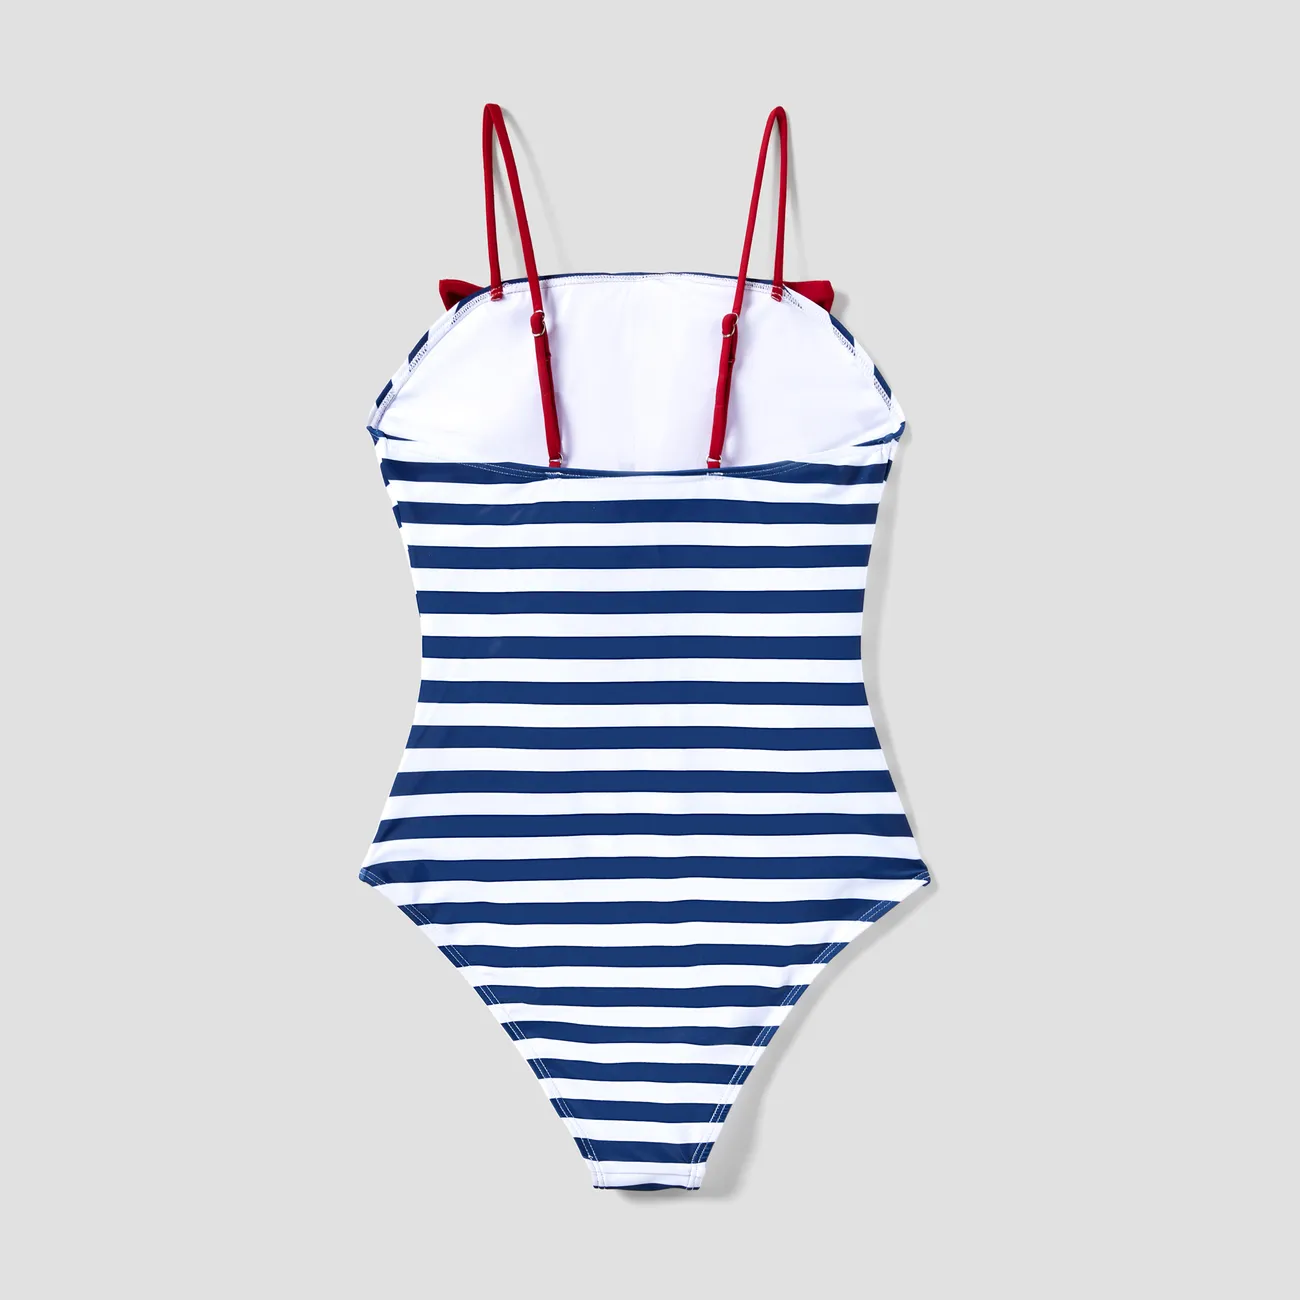 ملابس السباحة إطلالة العائلة للجنسين توب بحمالات خطوط متعدد الألوان big image 1